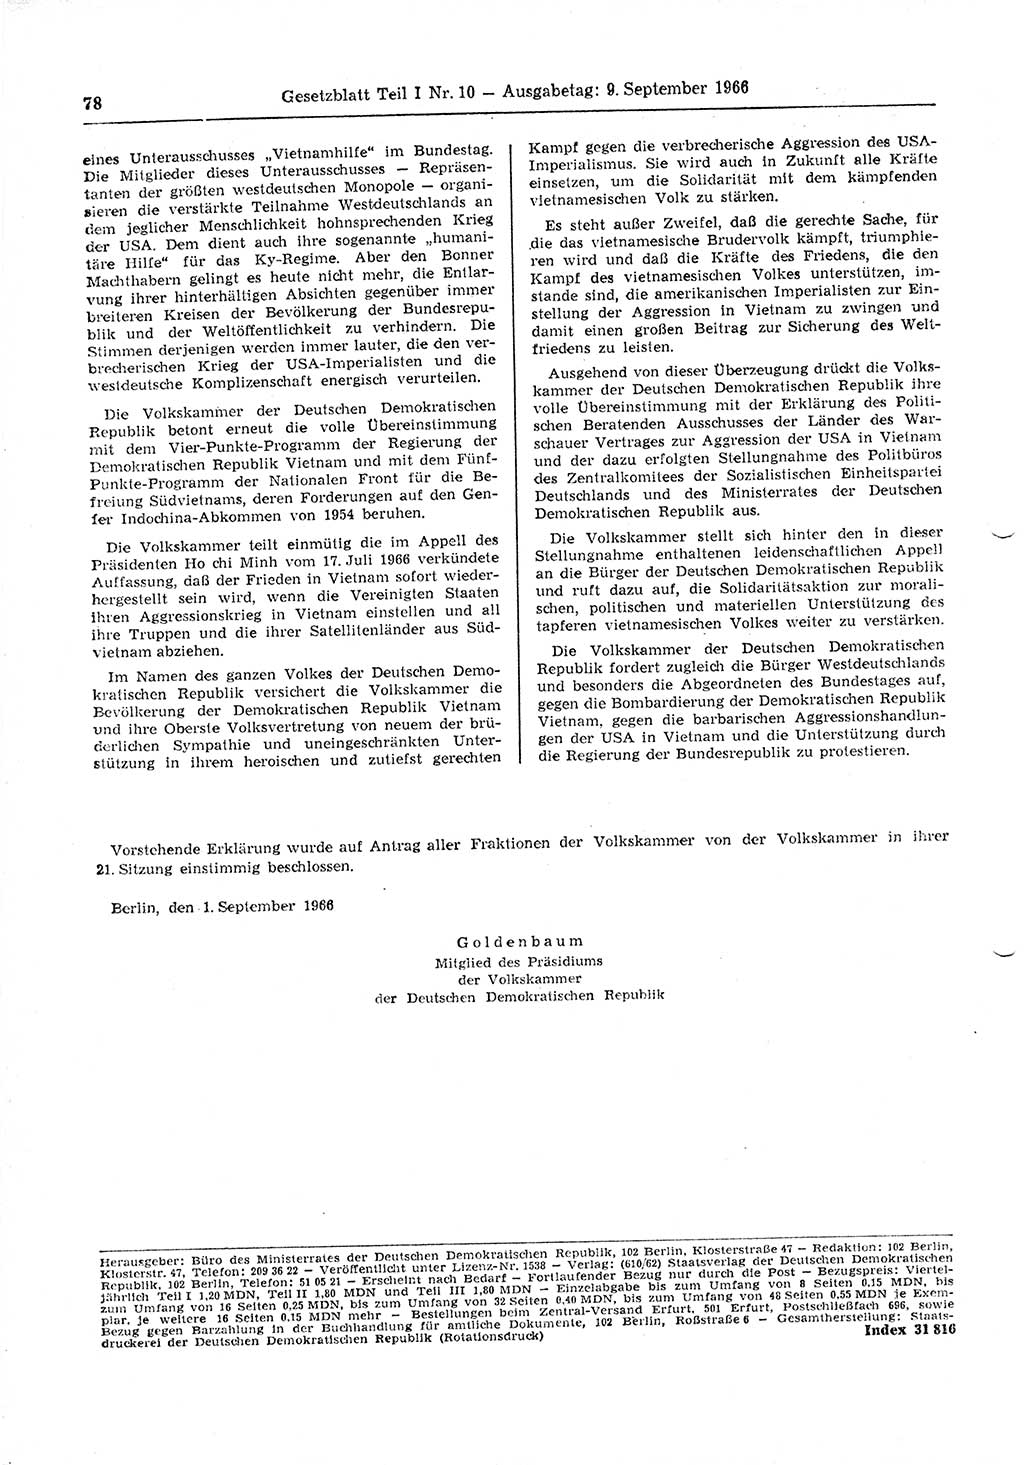 Gesetzblatt (GBl.) der Deutschen Demokratischen Republik (DDR) Teil Ⅰ 1966, Seite 78 (GBl. DDR Ⅰ 1966, S. 78)